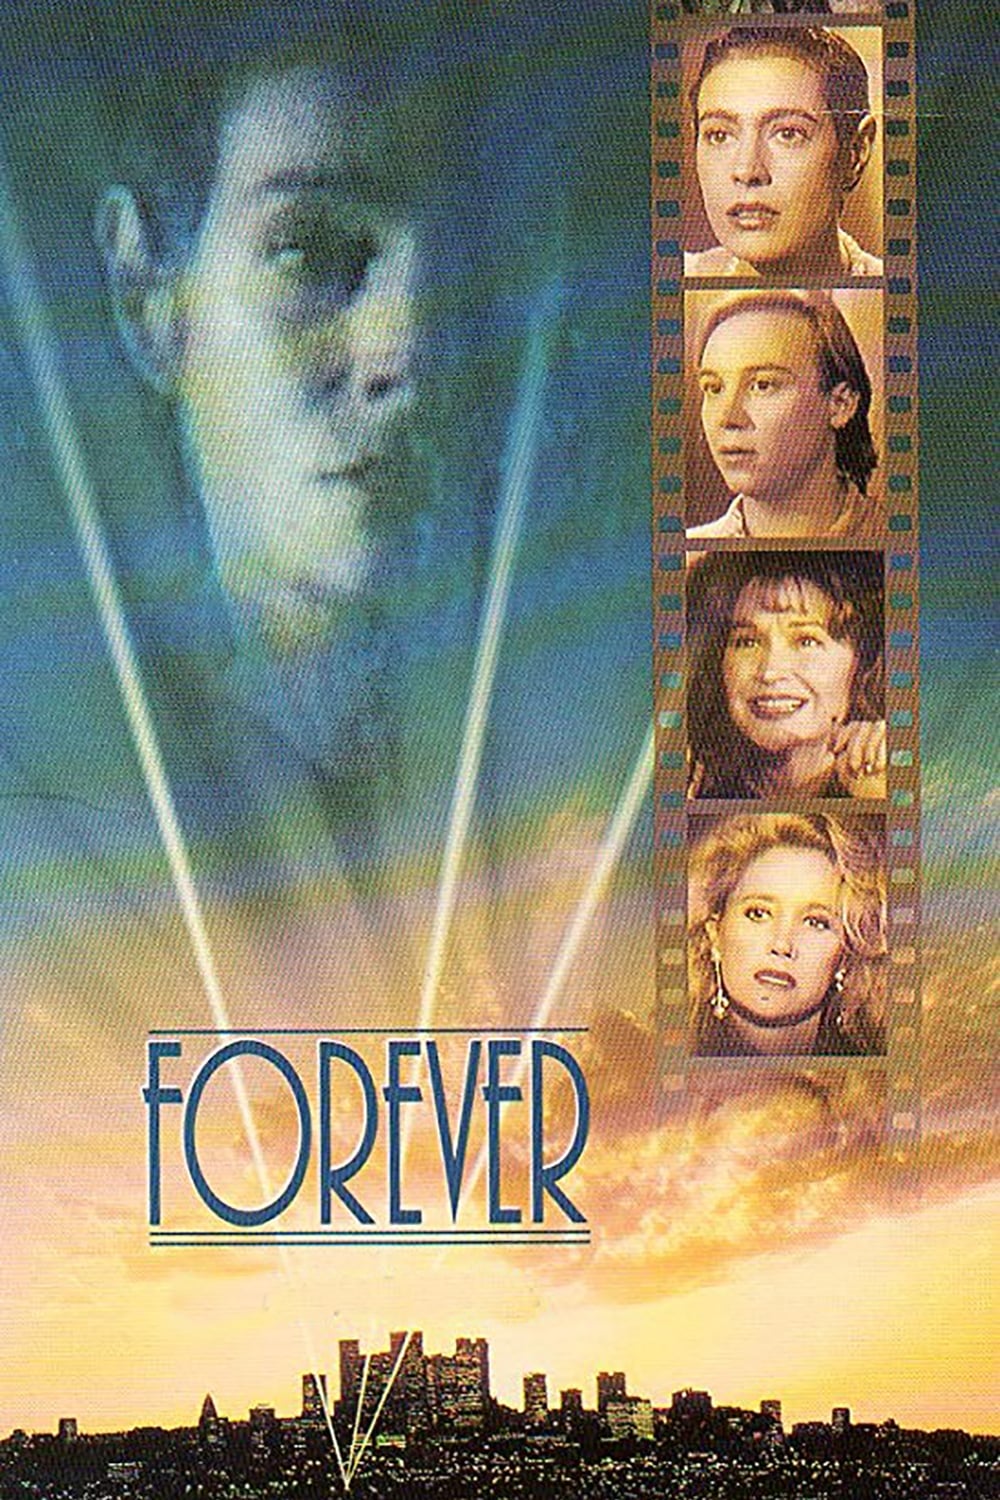 Forever (1992)